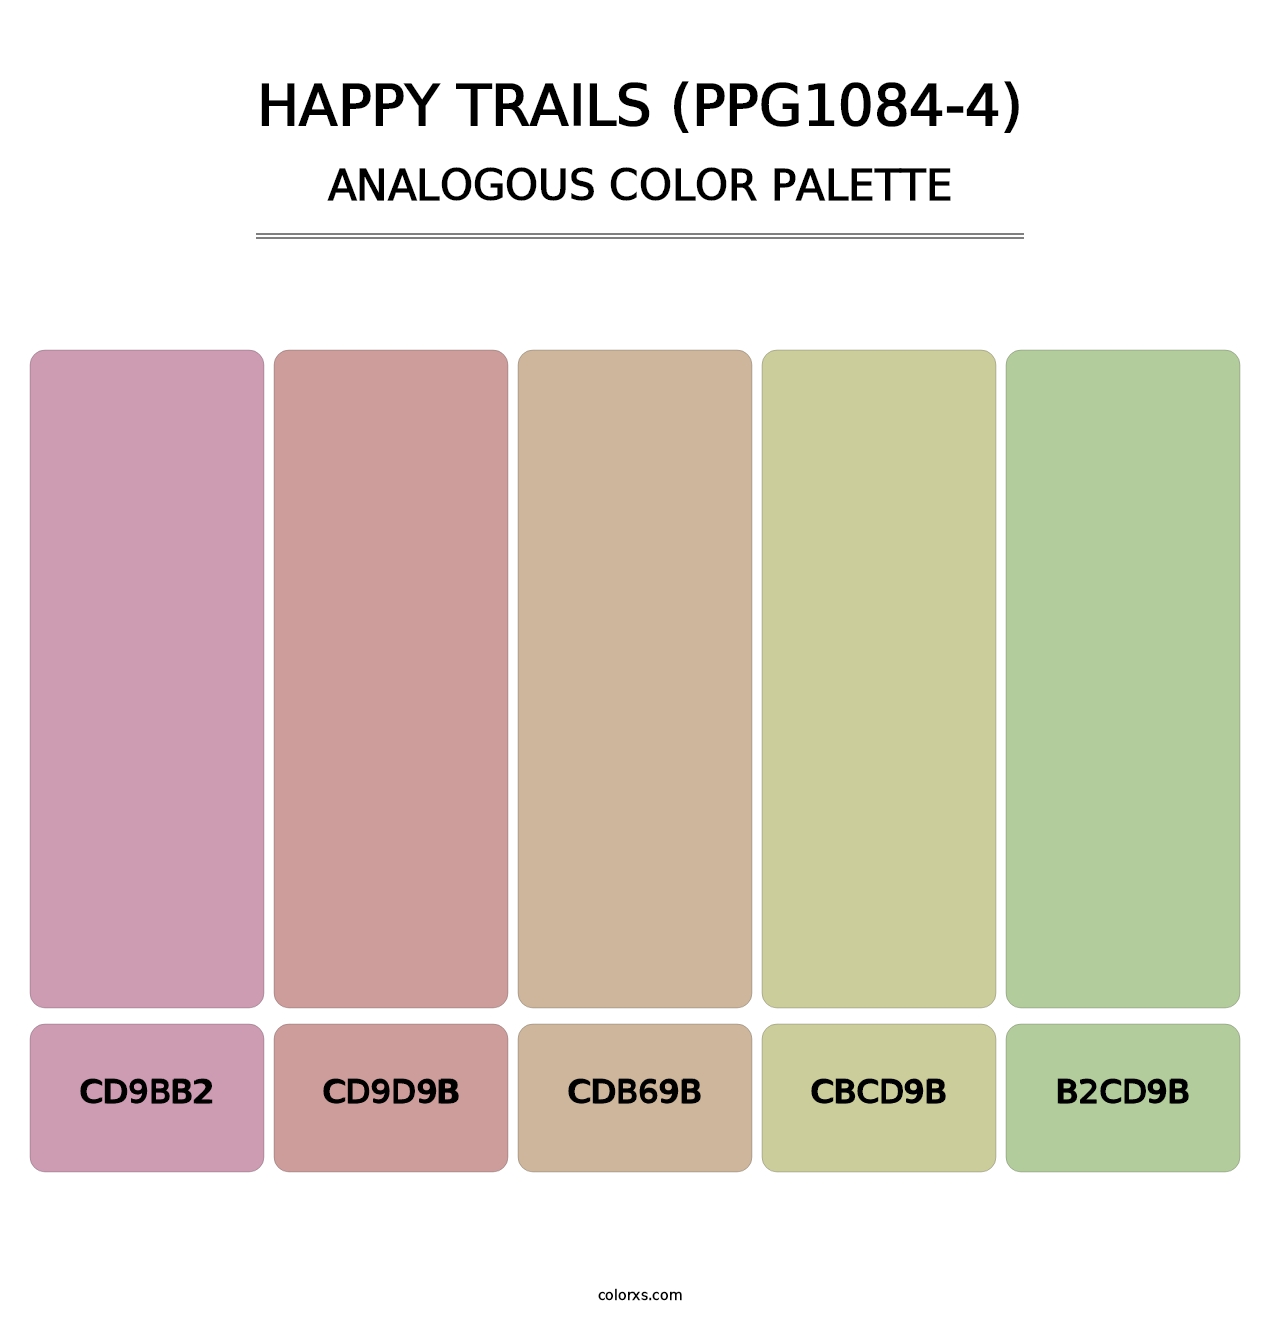 Happy Trails (PPG1084-4) - Analogous Color Palette